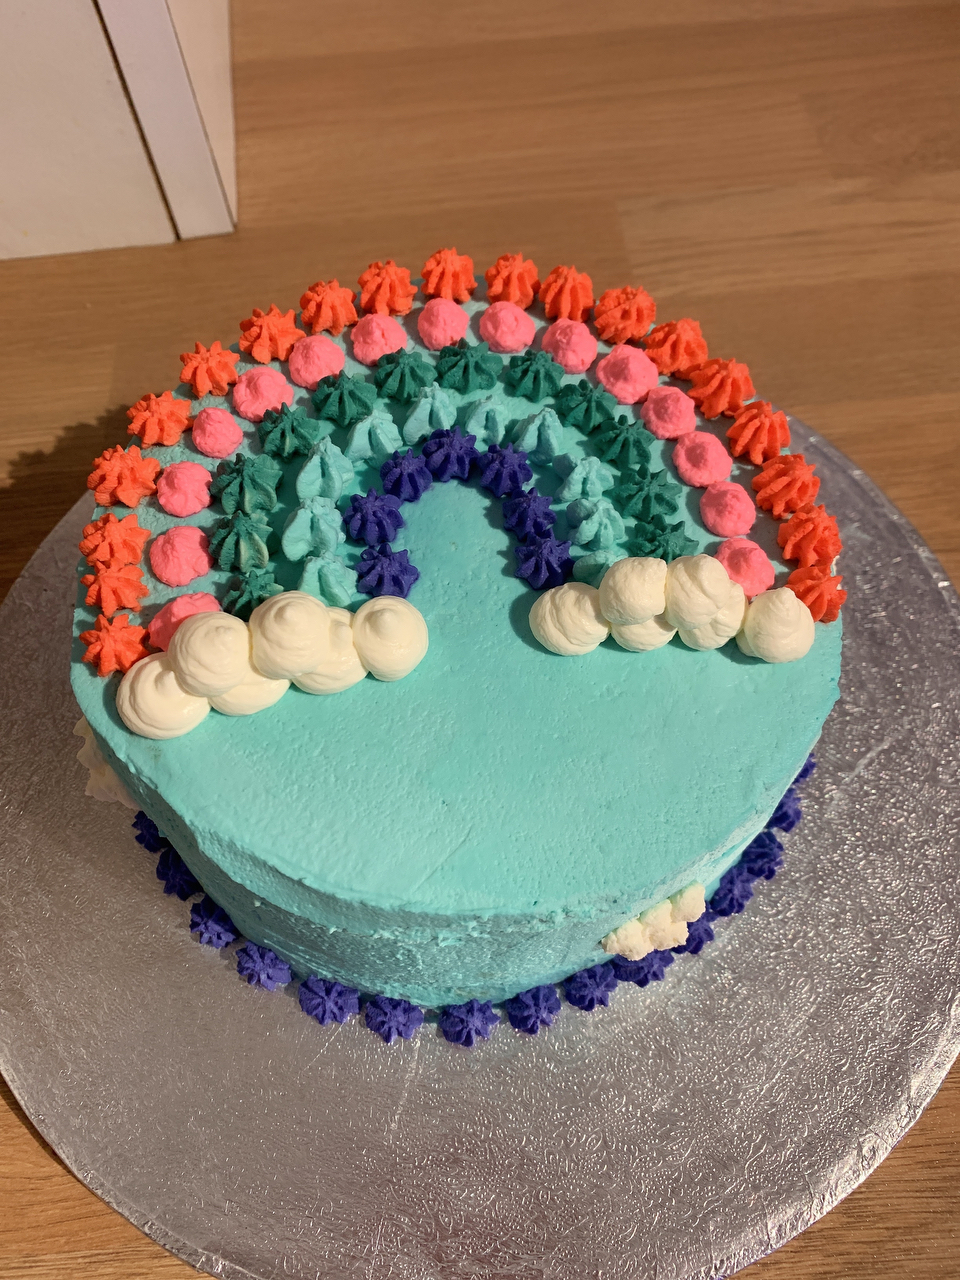 彩虹蛋糕🌈